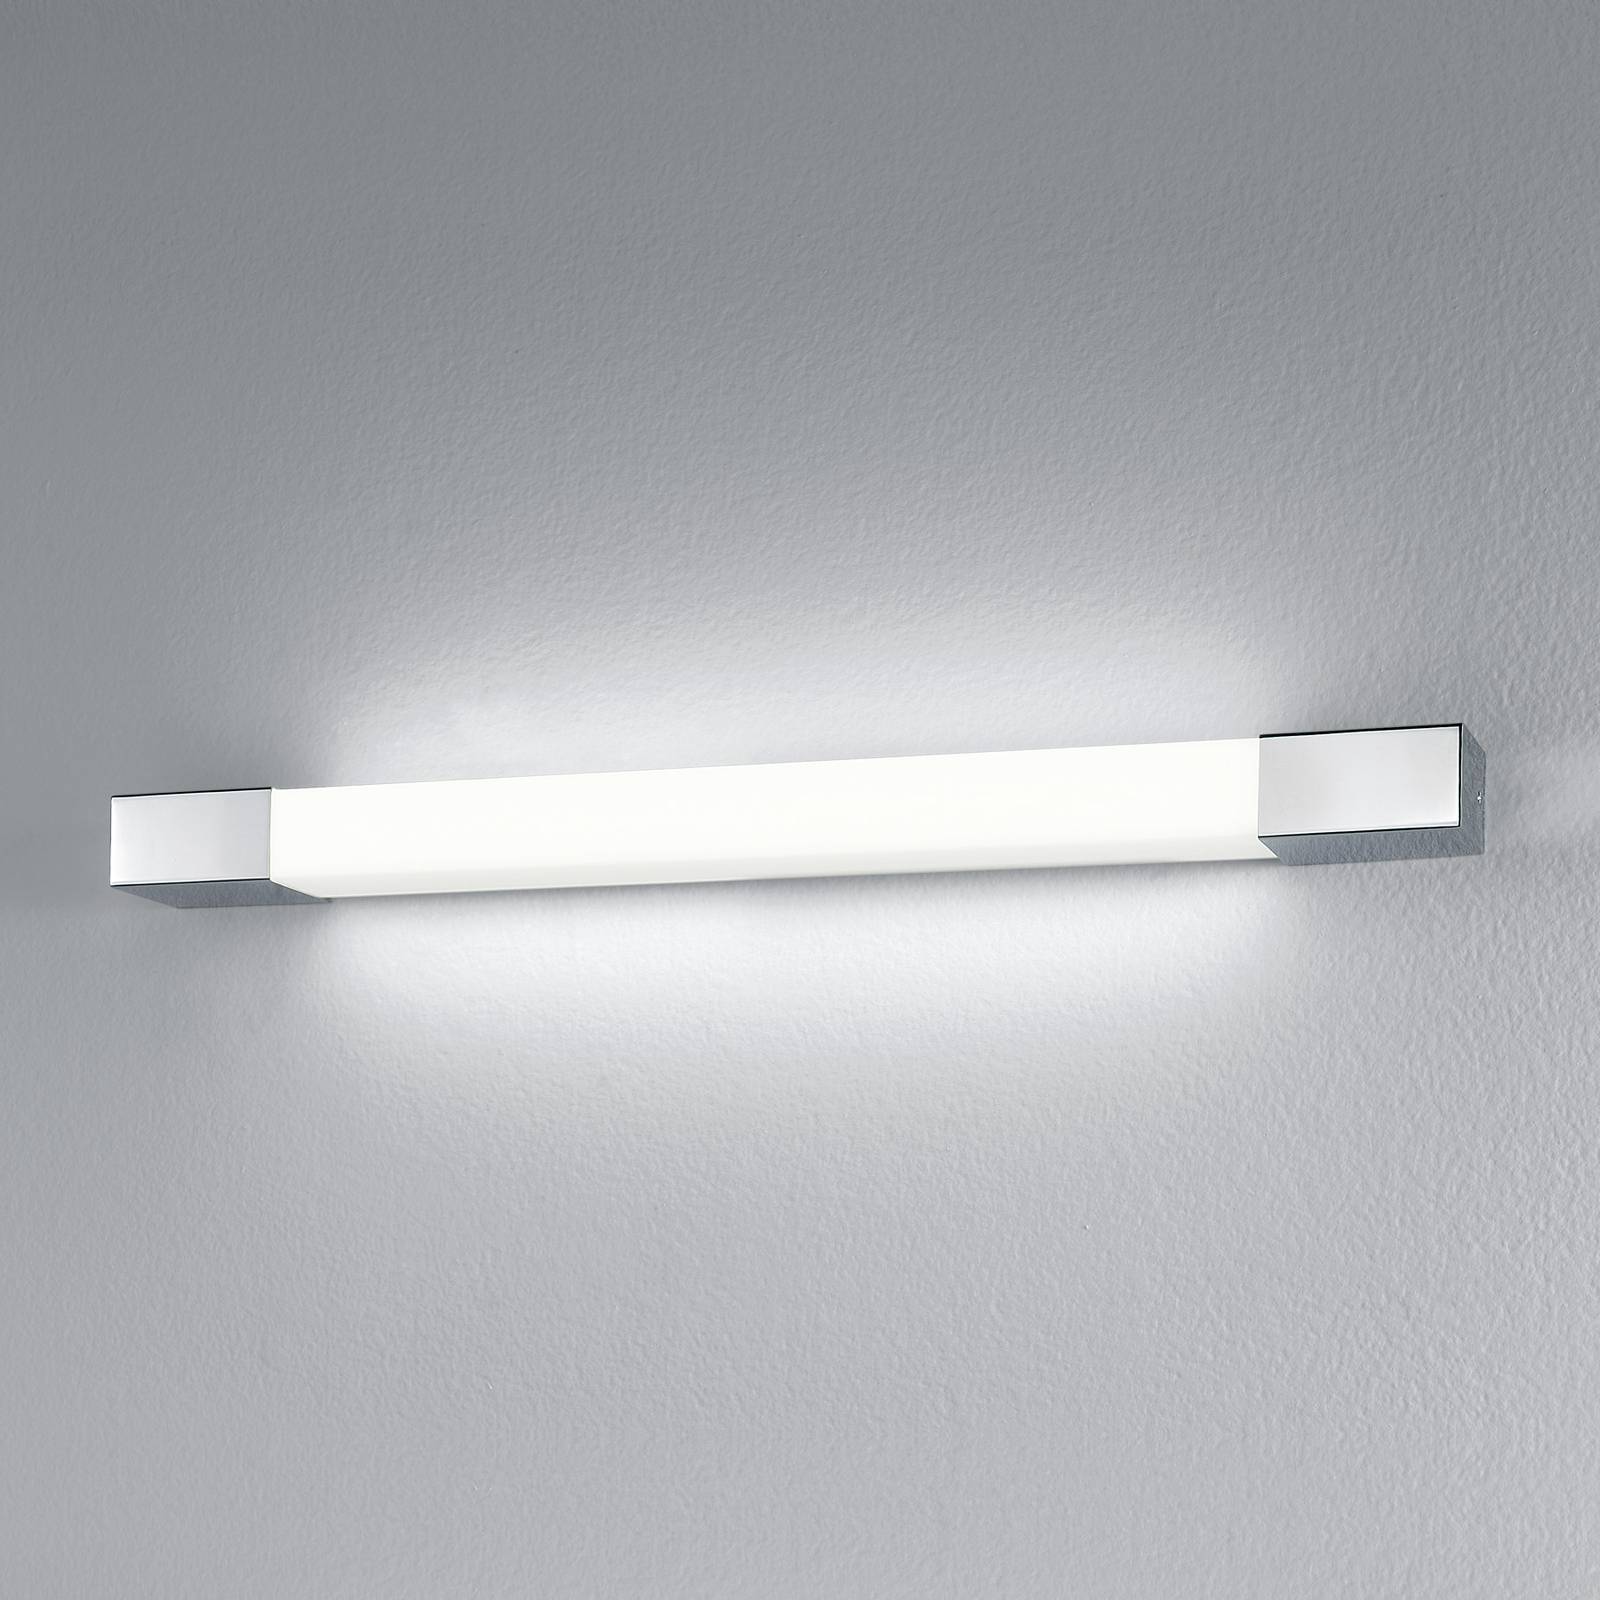 Egger Licht Egger Supreme LED-Wandleuchte, edelstahl, 60 cm